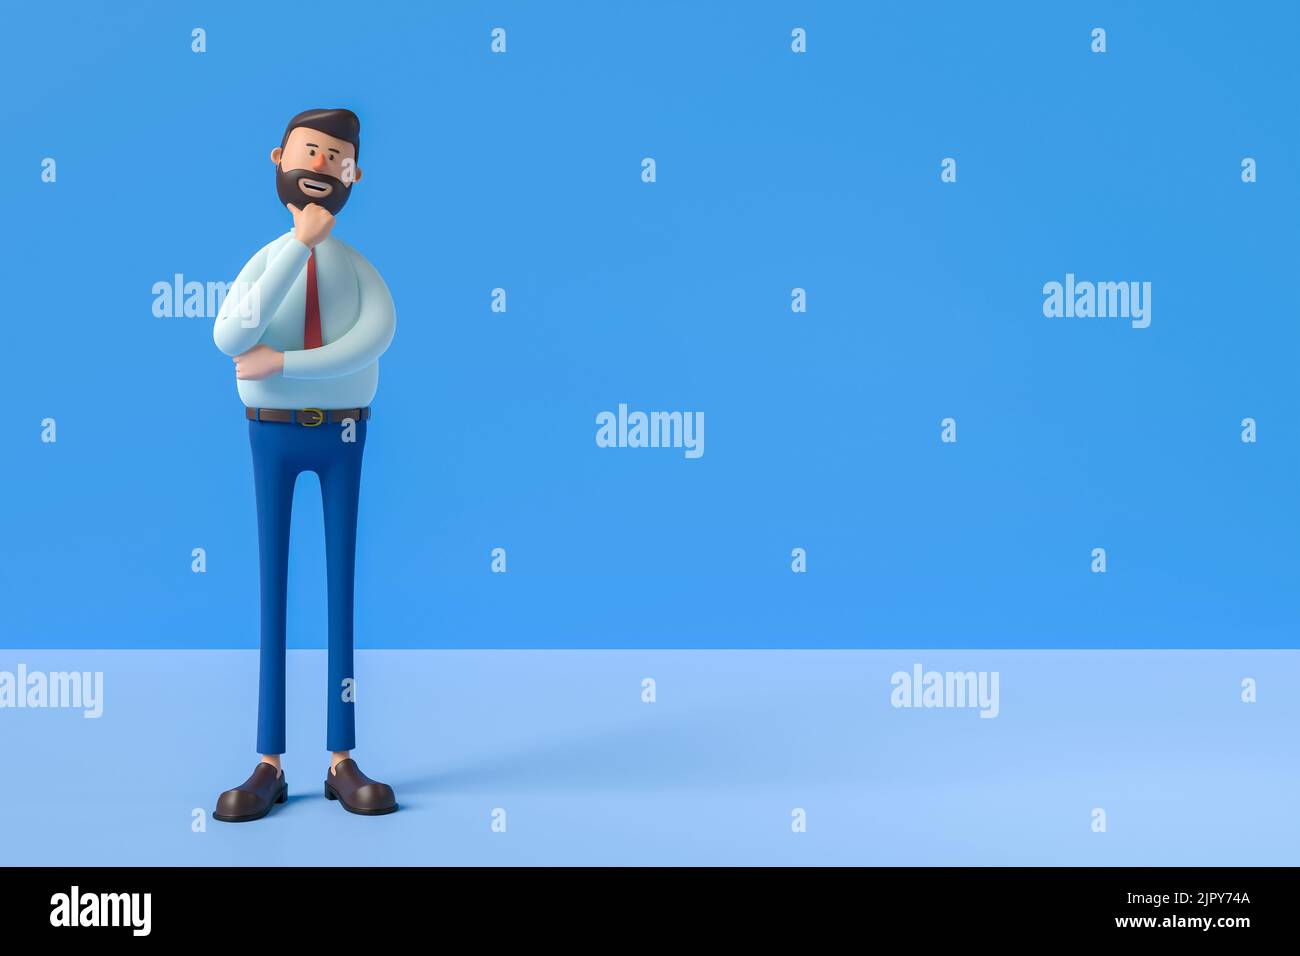 3D Abbildung. Cartoon-Charakter niedlich GESCHÄFTSMANN isoliert auf blauem Hintergrund. Ernsthafter Kerl denkende Pose. Der kaukasische Mann trägt ein weißes Hemd und ein rotes Stockfoto